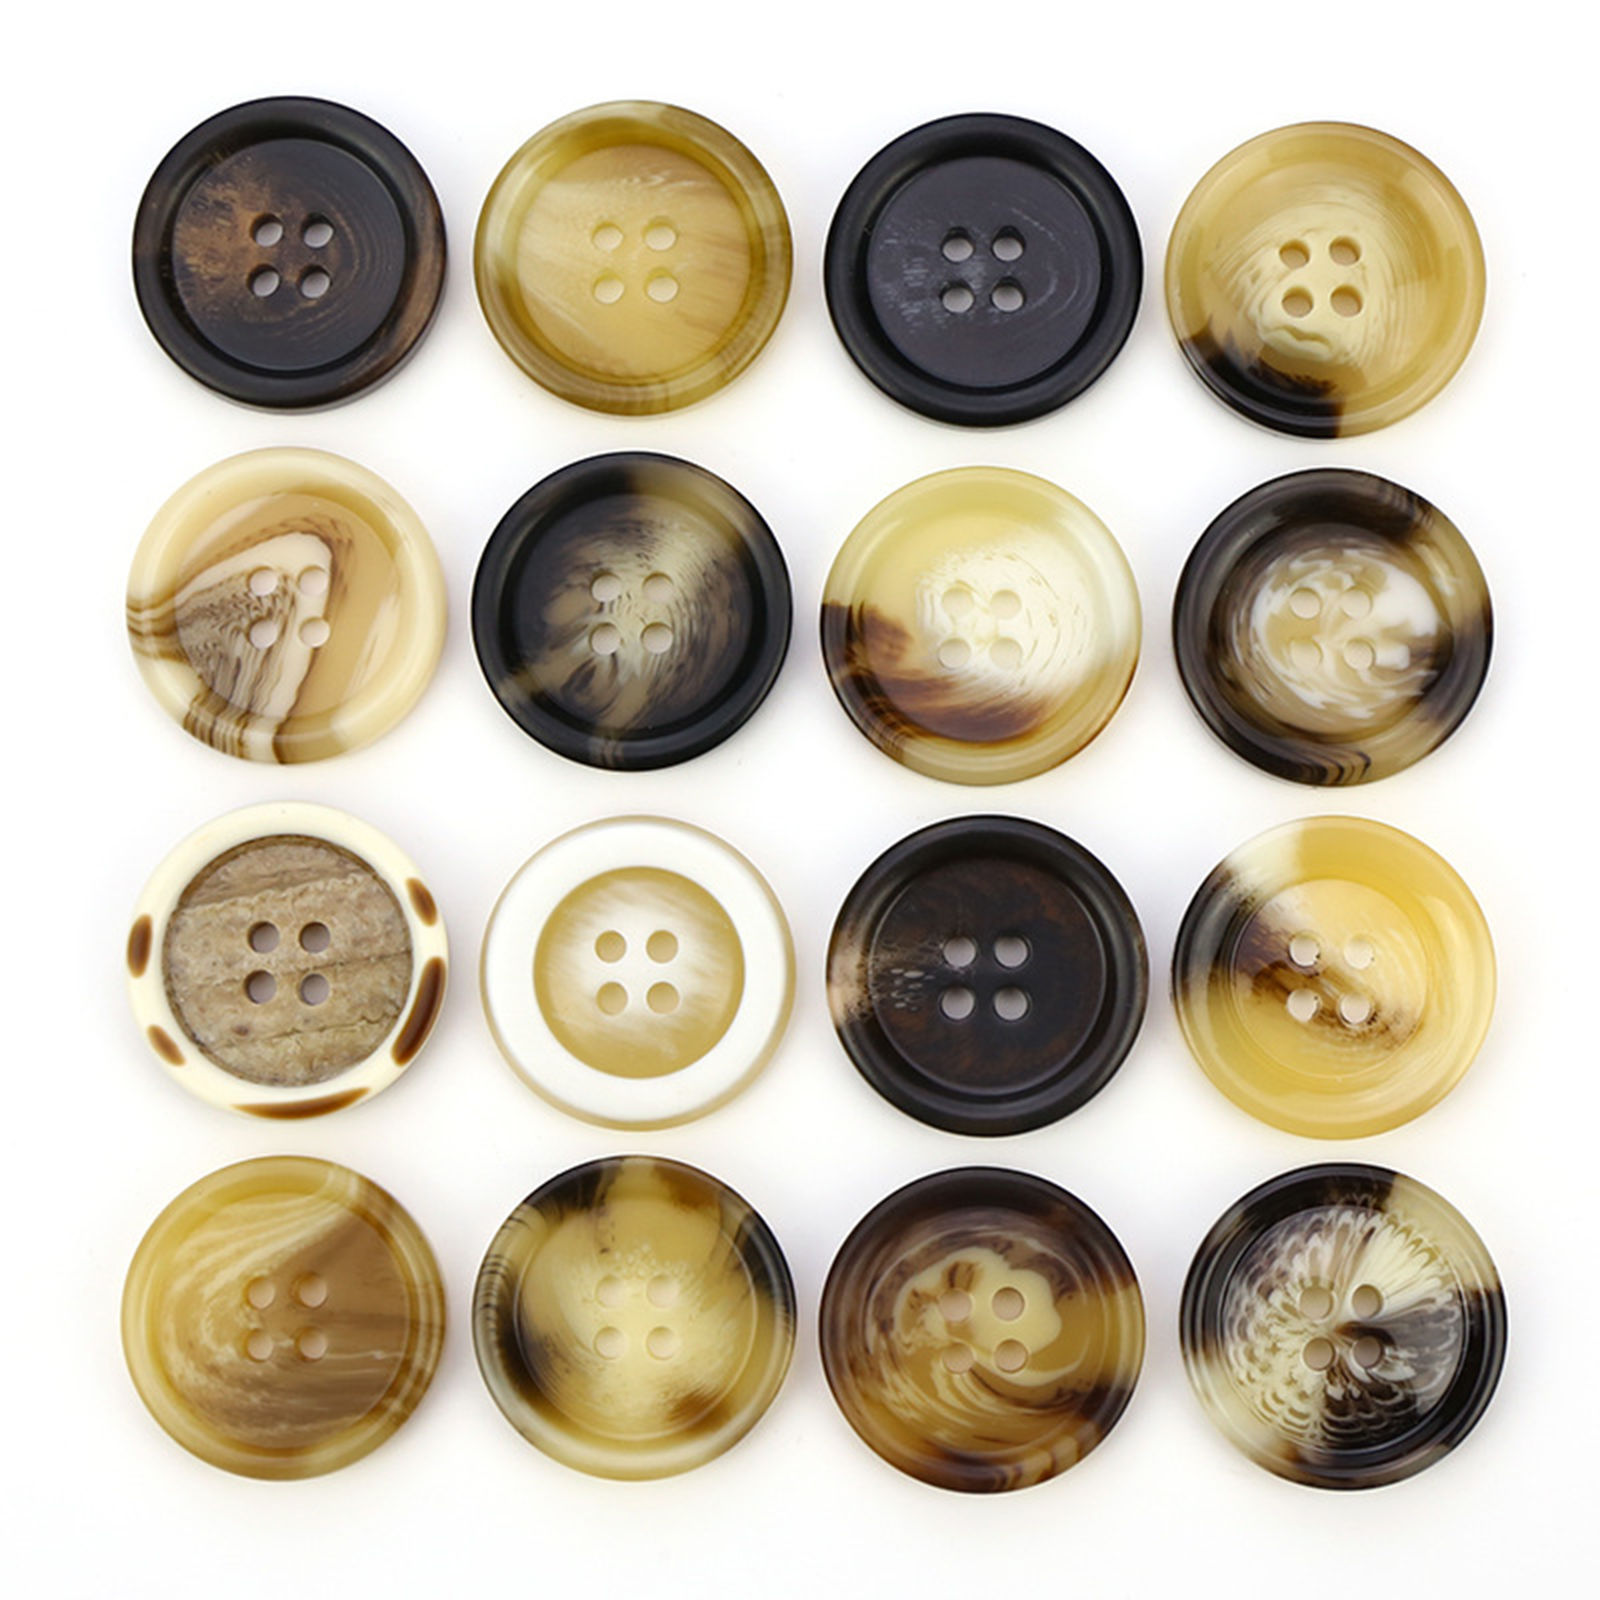 Immagine di Resina Acido Acetico Bottone da Cucire Scrapbook Quattro Fori Tondo Colore del Caffè 30.5mm Dia, 20 Pz